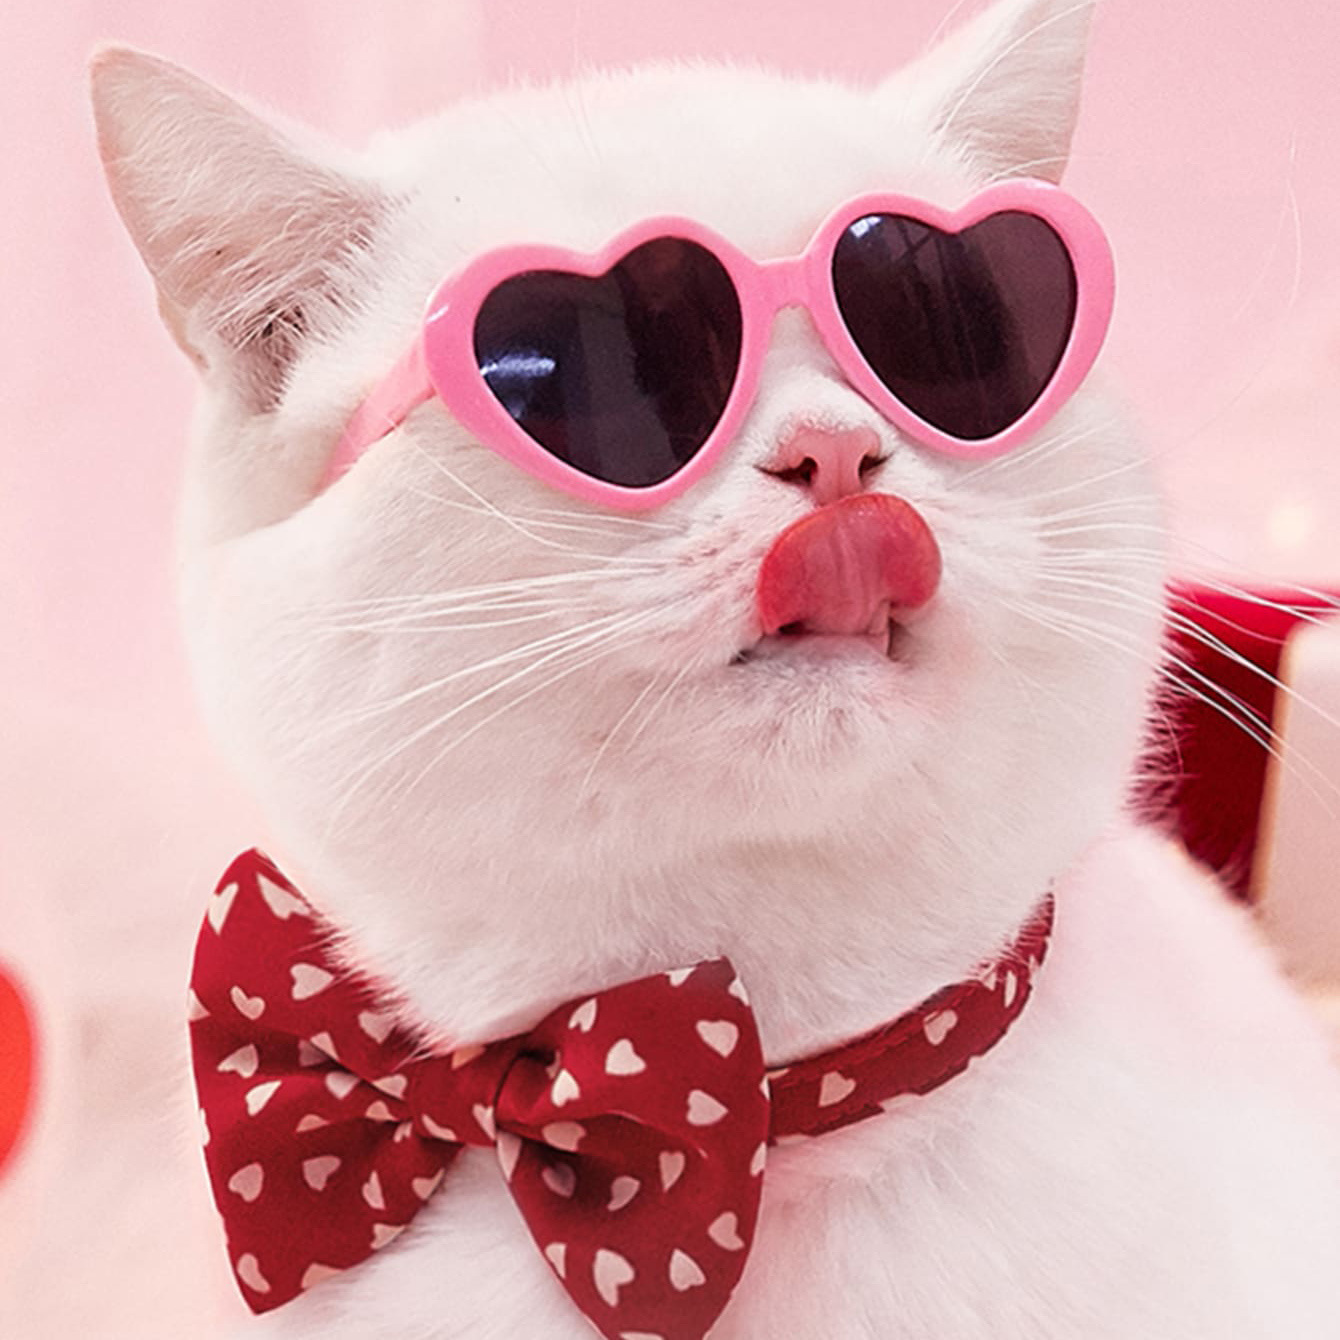 宠物猫眼镜复古耍酷狗眼镜创意潮流爱心眼镜拍照道具猫狗搞怪墨镜